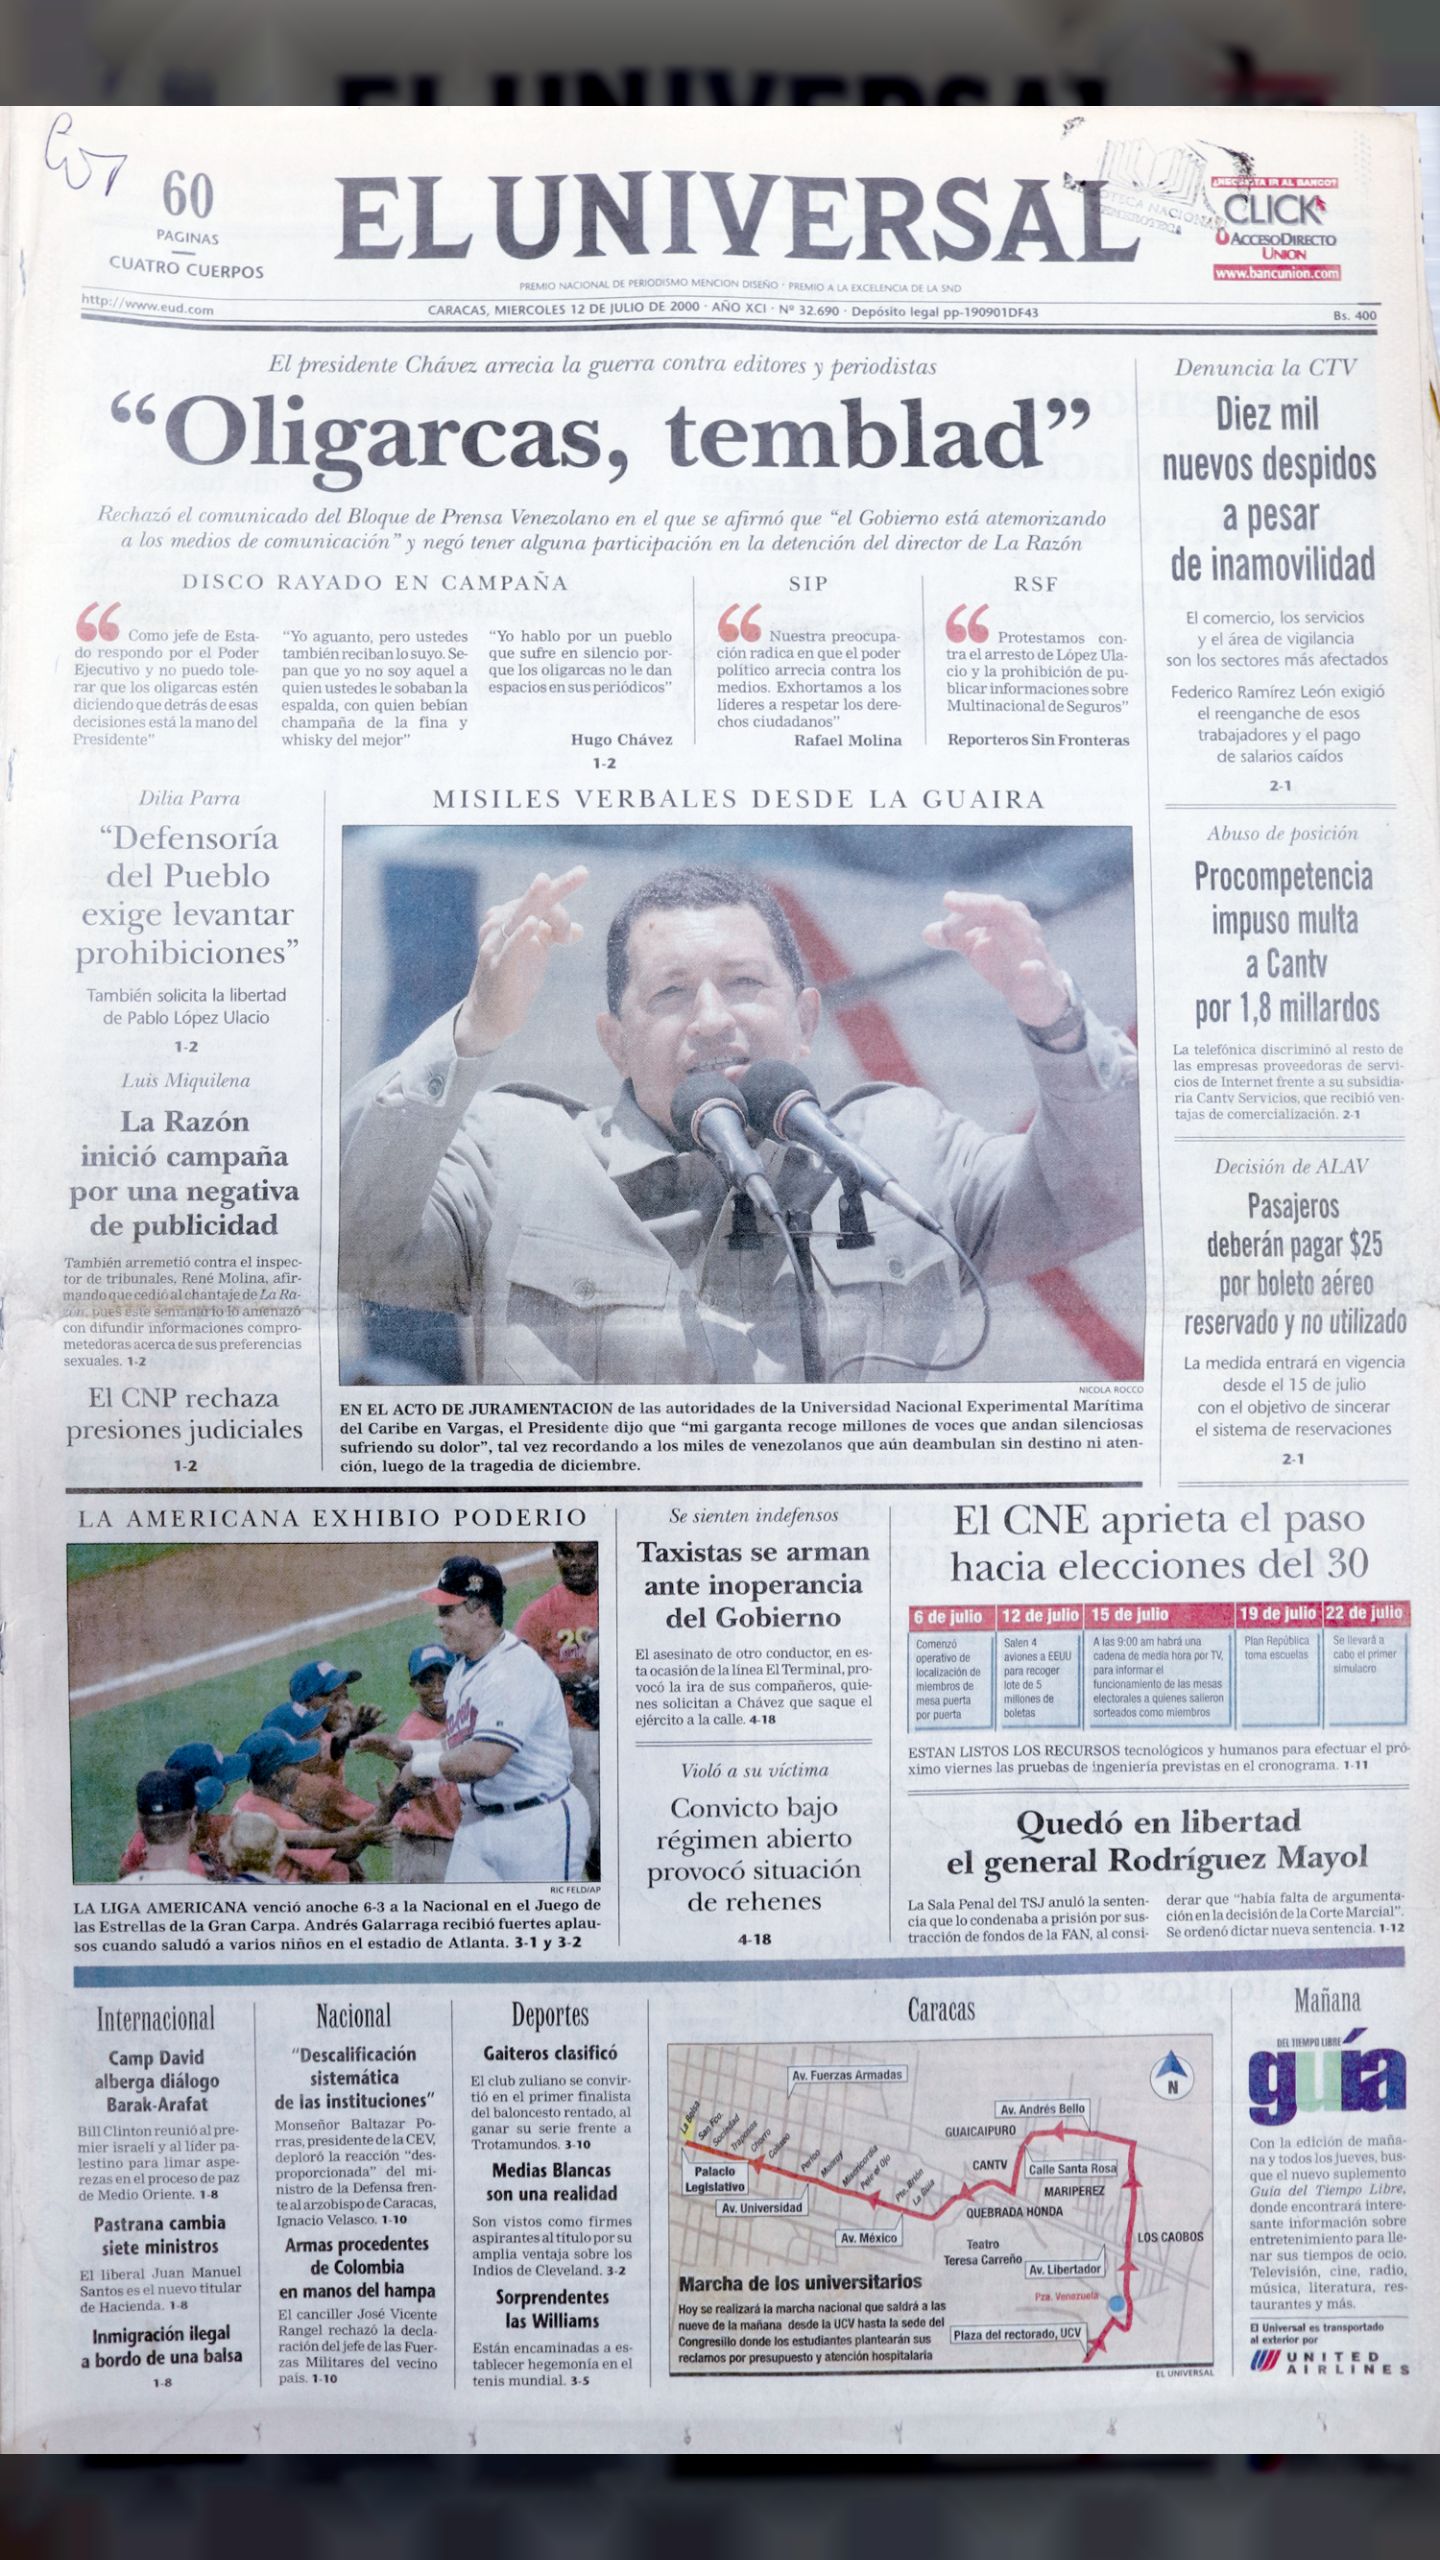 "Oligarcas Temblad" (El Universal, 12 de julio 2000)